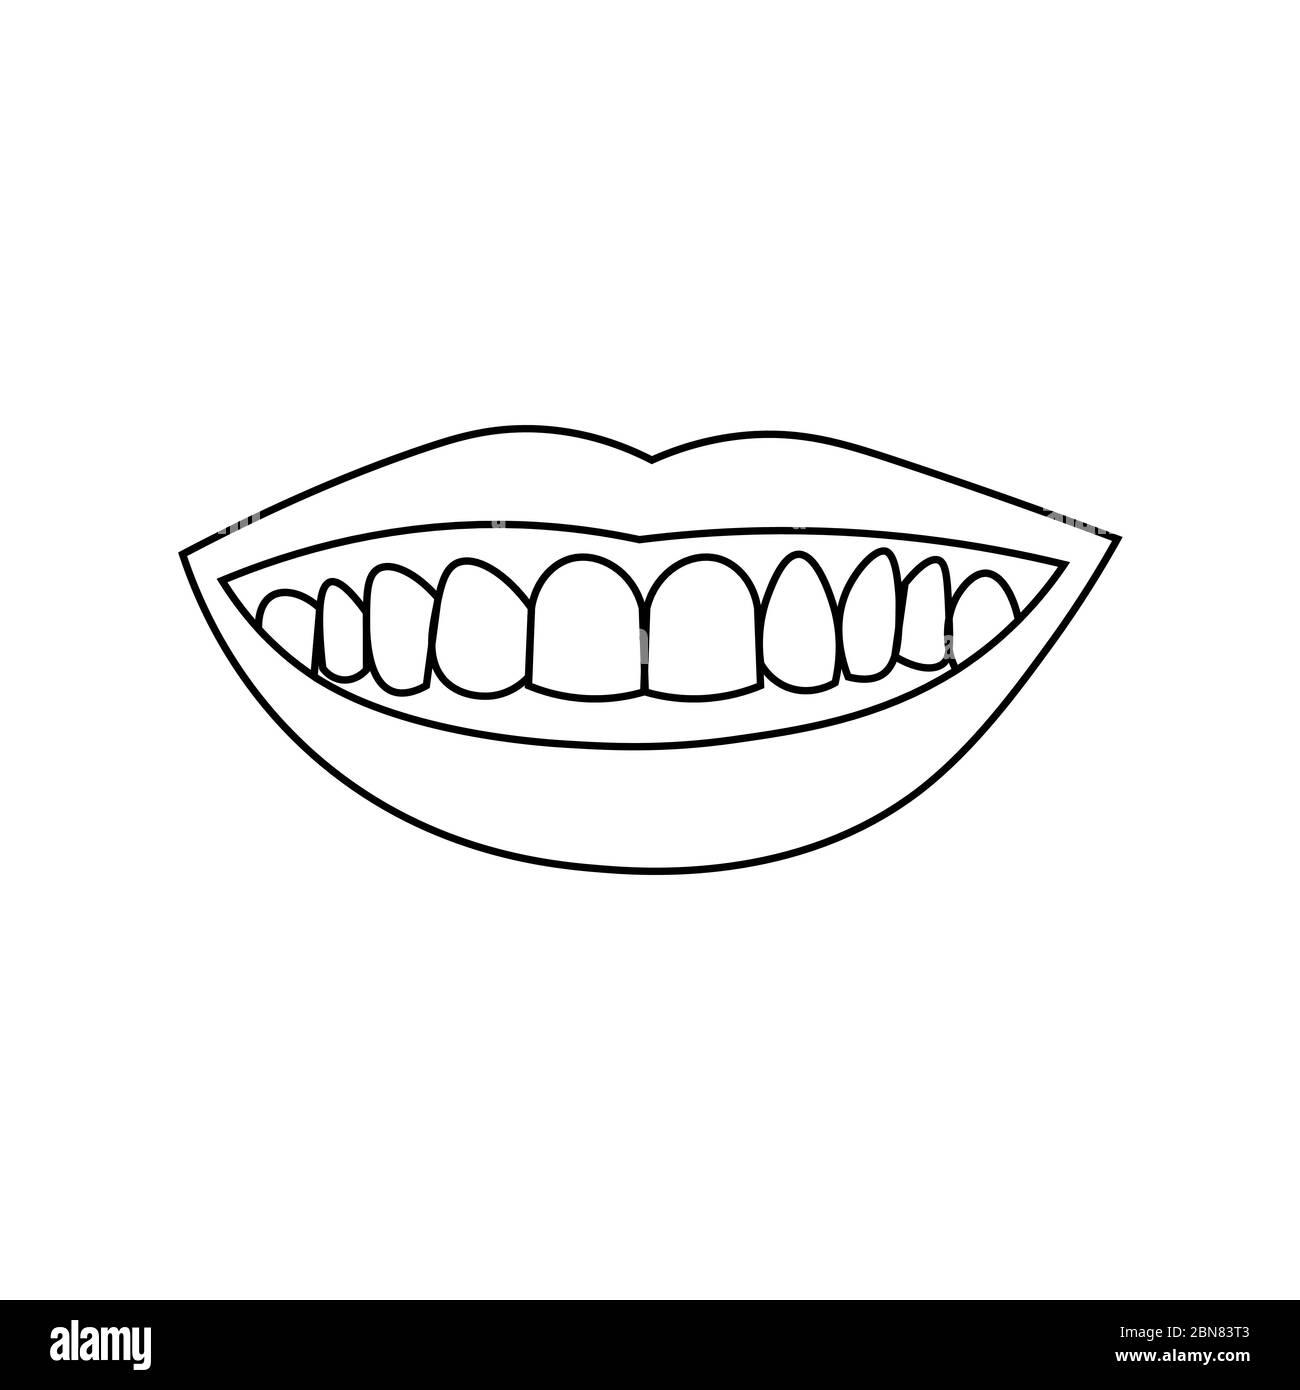 Labios sonrientes con dientes. Contorno negro sobre fondo blanco. La ilustración vectorial puede utilizarse en tarjetas de felicitación, carteles, volantes, banners, promociones, invitaciones, etc. EPS10 Ilustración del Vector